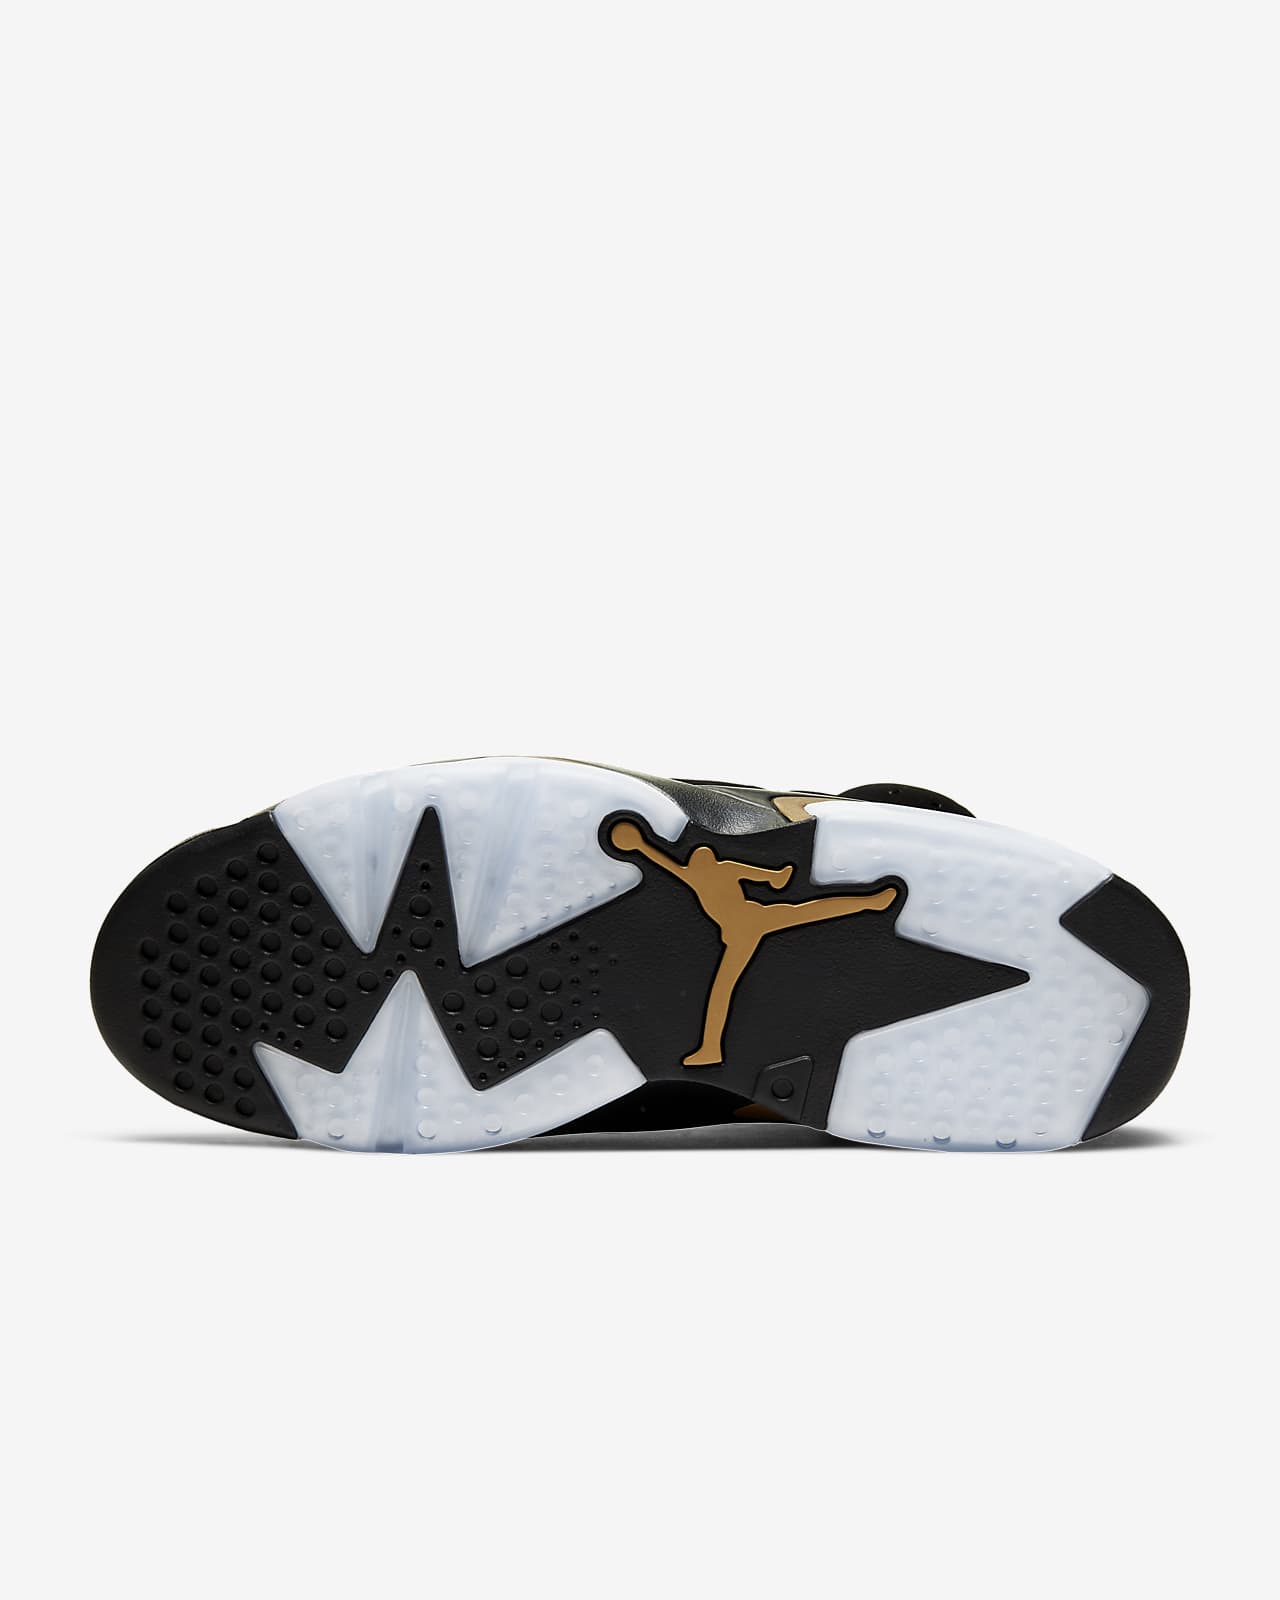 Air Jordan 6 Retro Dmp Men S Shoe Nike In